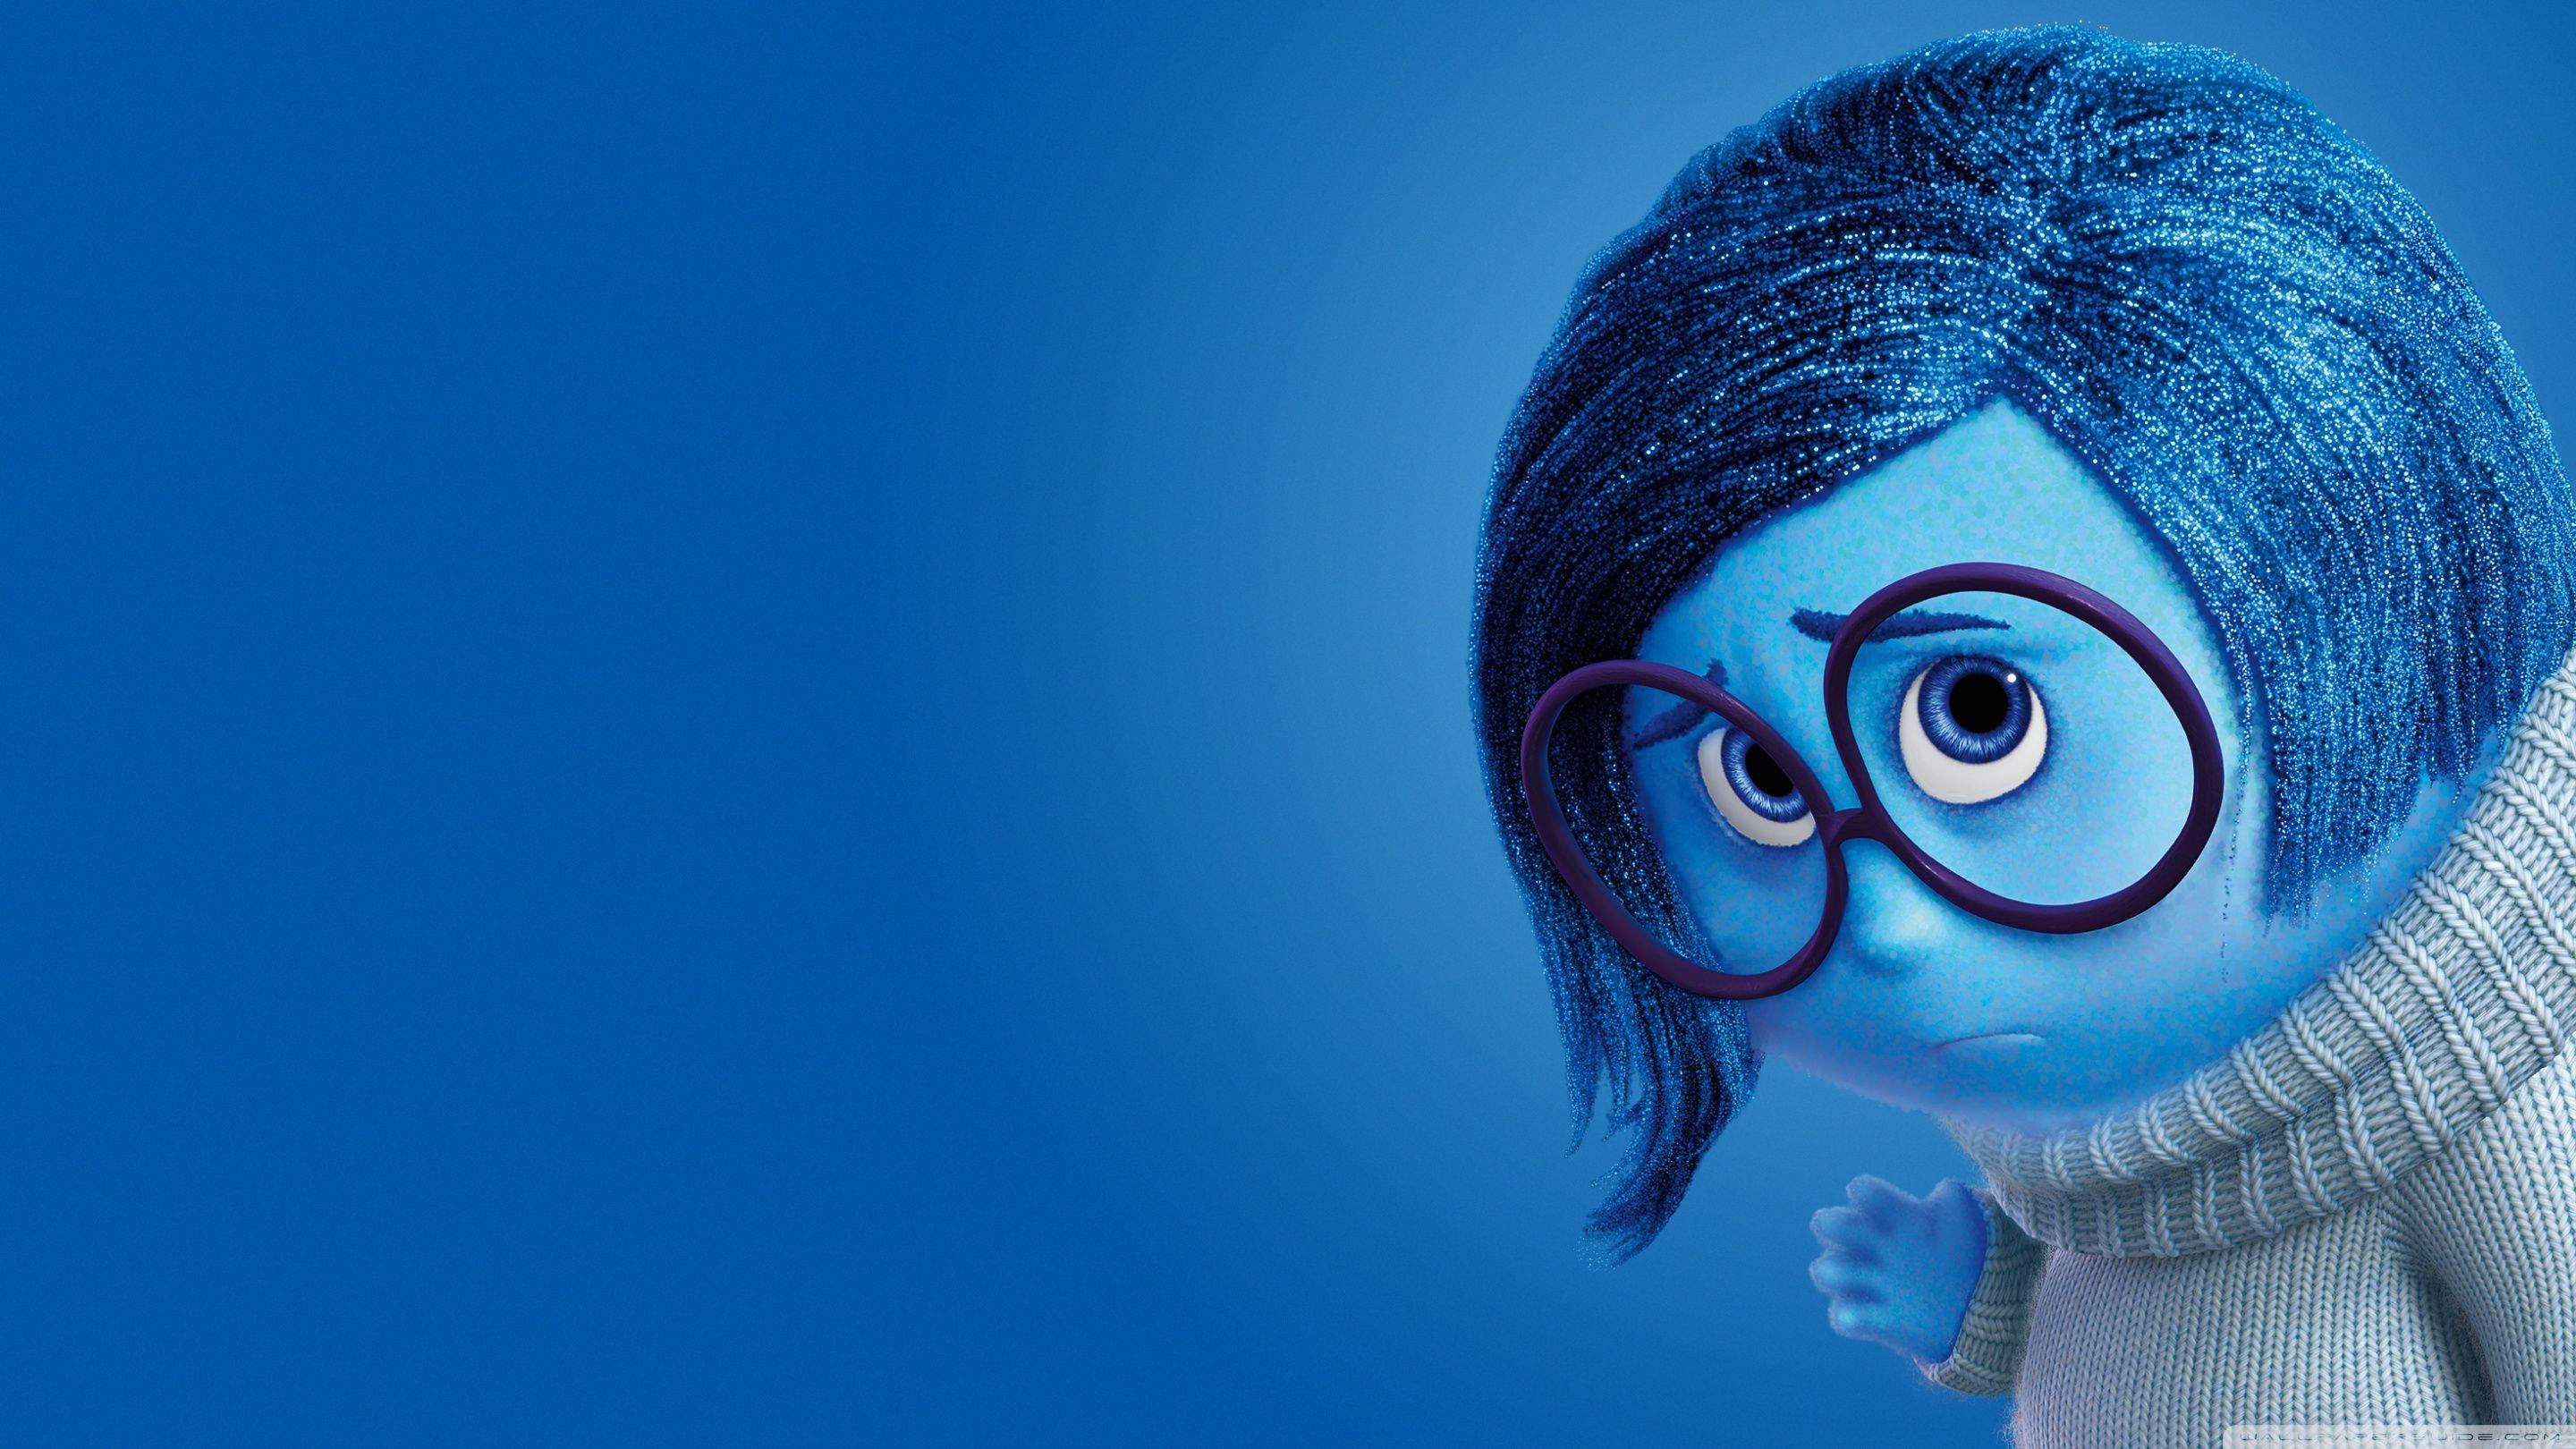 2880x1620 Inside Out Sadness - Disney, Pixar ❤ Máy tính để bàn HD 4K